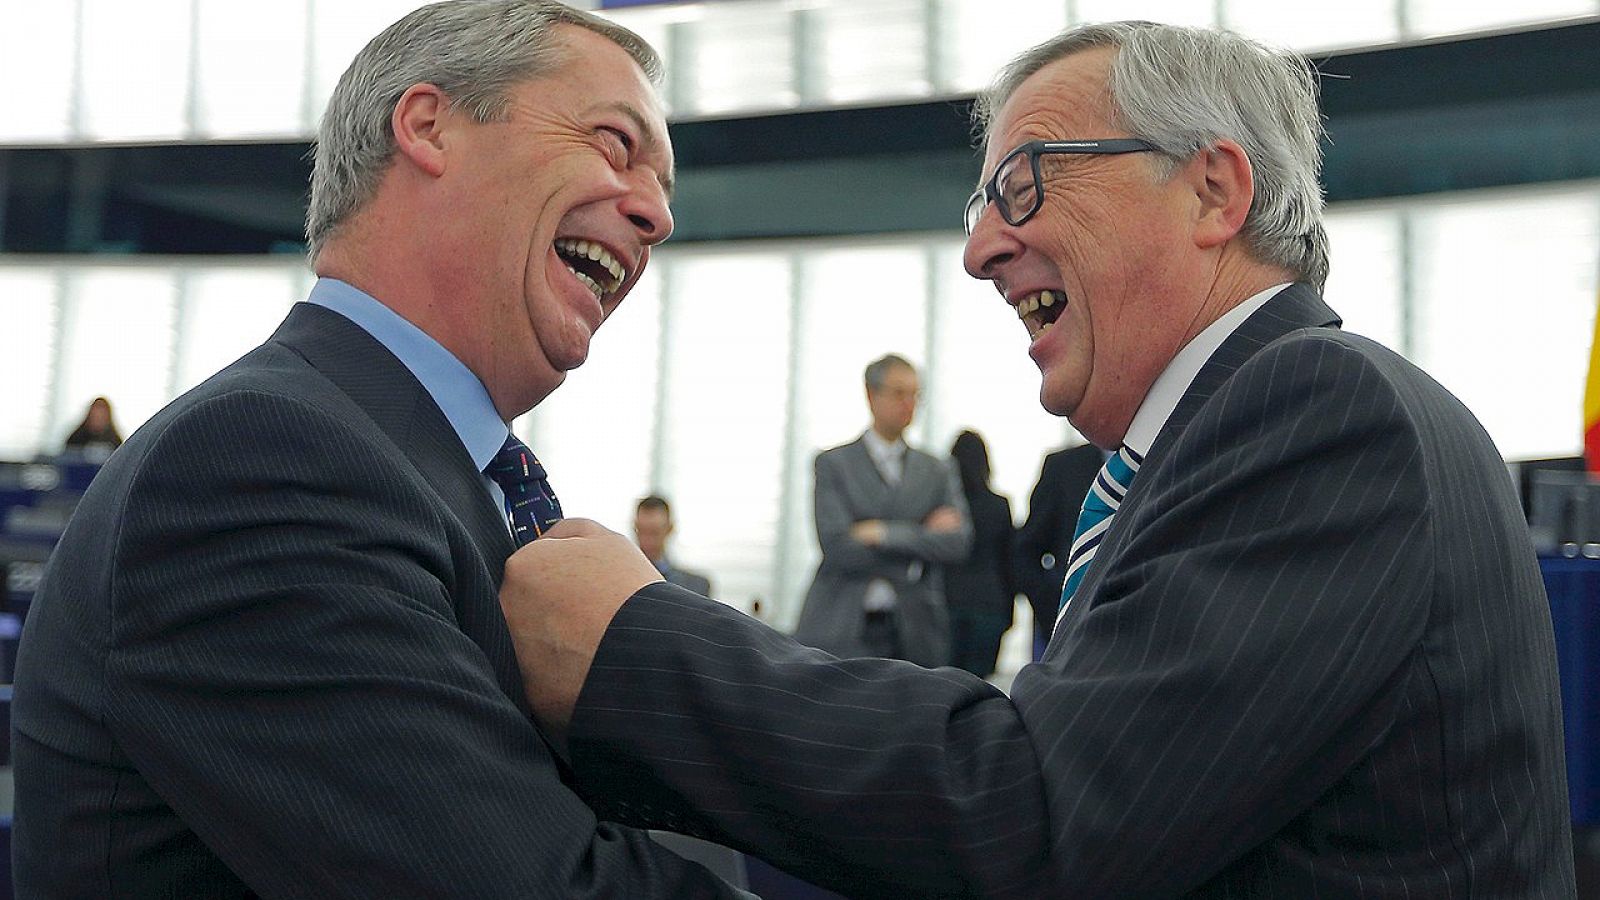 El presidente de la Comisión Europea, Jean-Claude Juncker (derecha) bromea con Nigel Farage, líder del eurófobo Partido de la Independencia del Reino Unido (UKIP), en el Parlamento europeo en Estrasburgo, el 3 de febrero de 2016. REUTERS/Vincent Kess